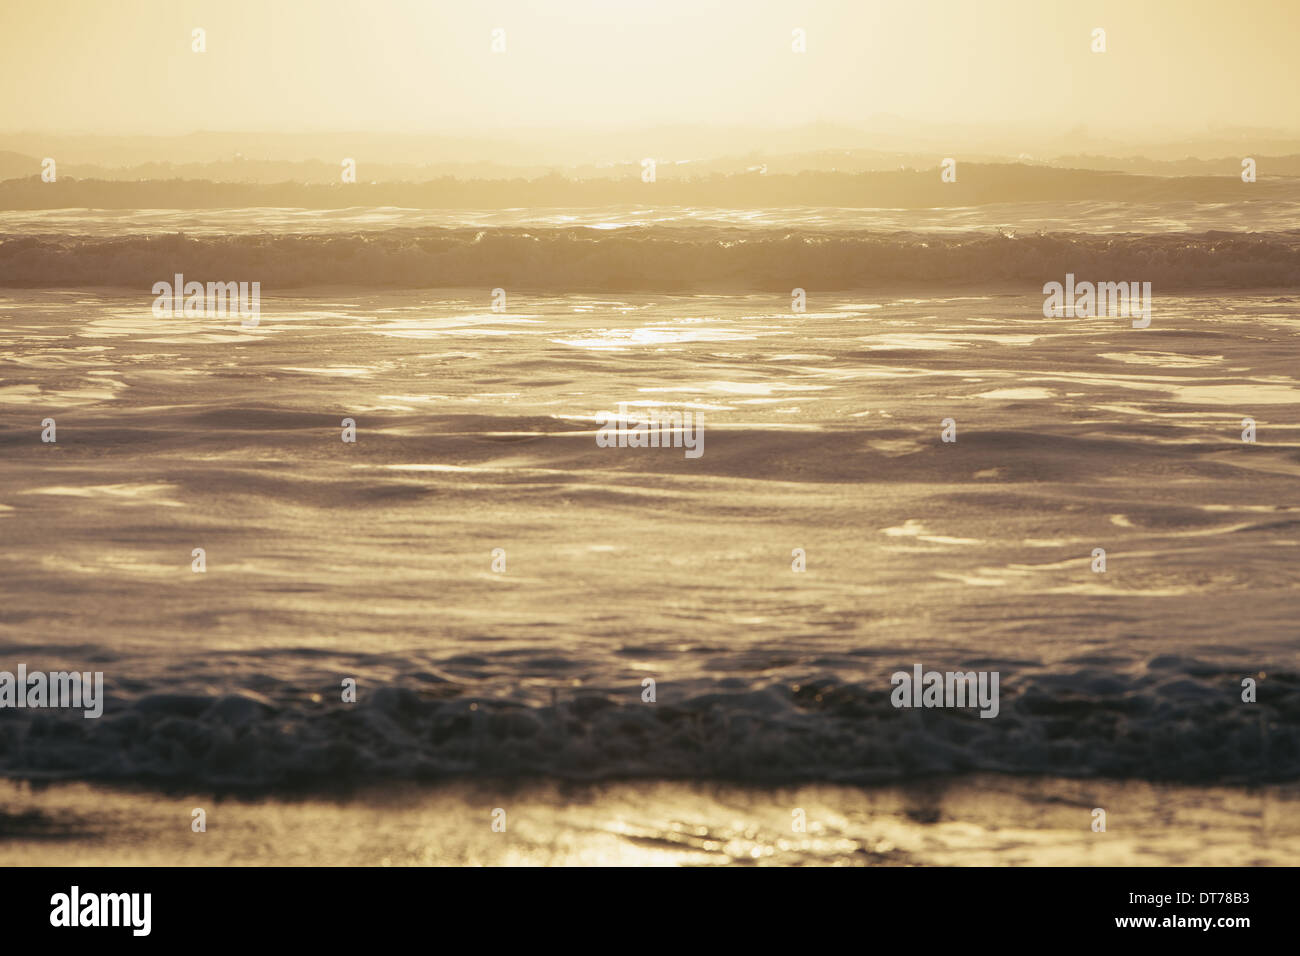 Seenlandschaft in der Abenddämmerung, Wellen am Ufer brechen. Gezeitenzone. Vor der Küste des Olympic National Park in Washington, USA Stockfoto